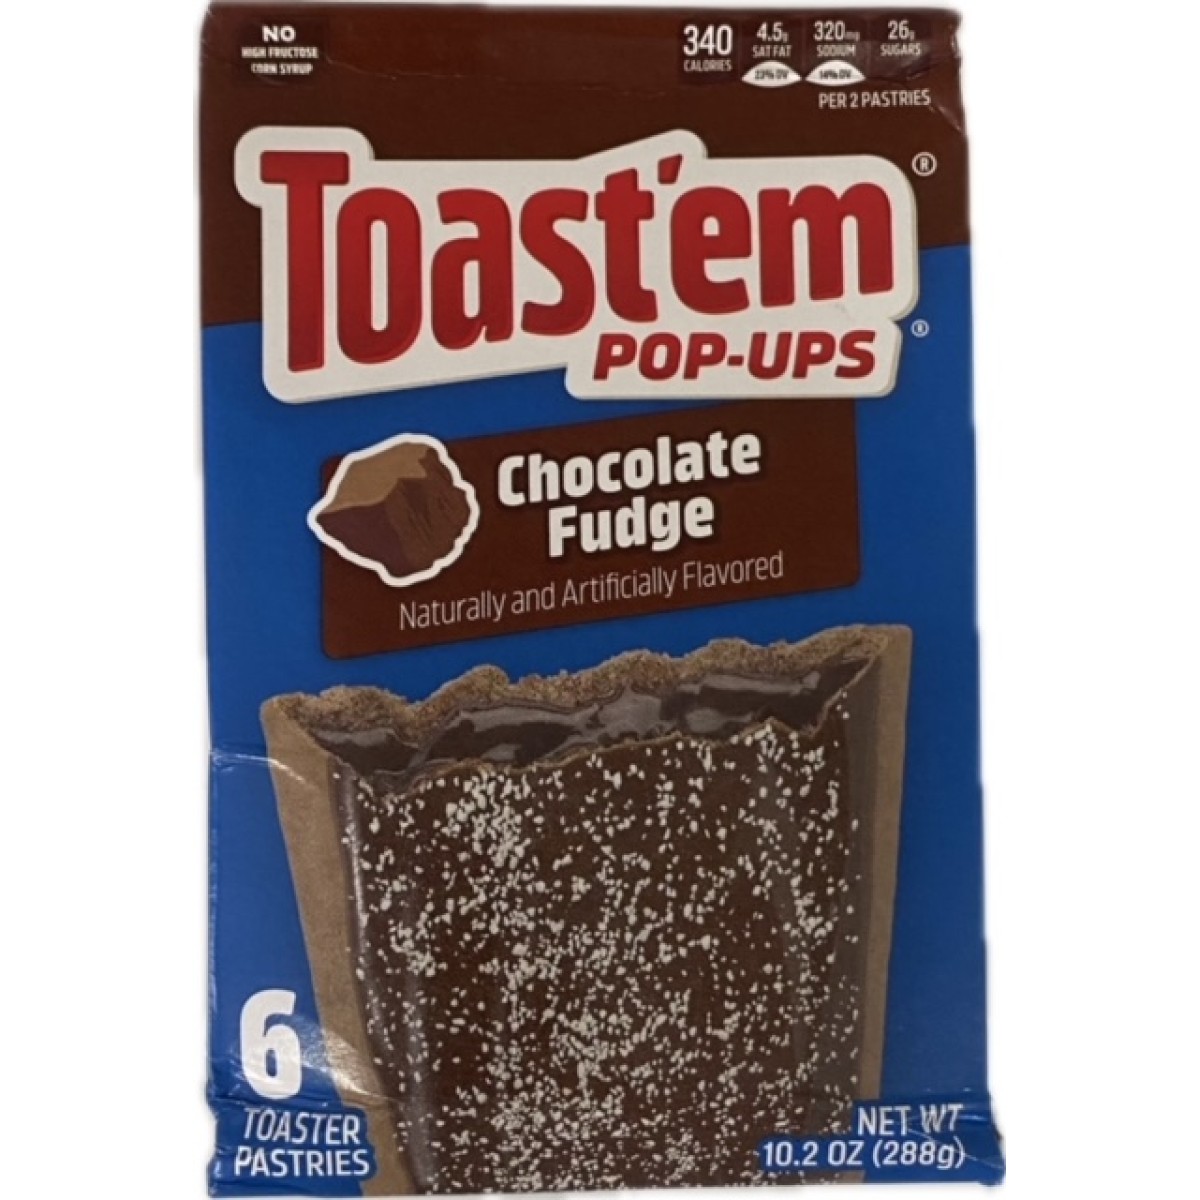 Toastem chocolate fudge